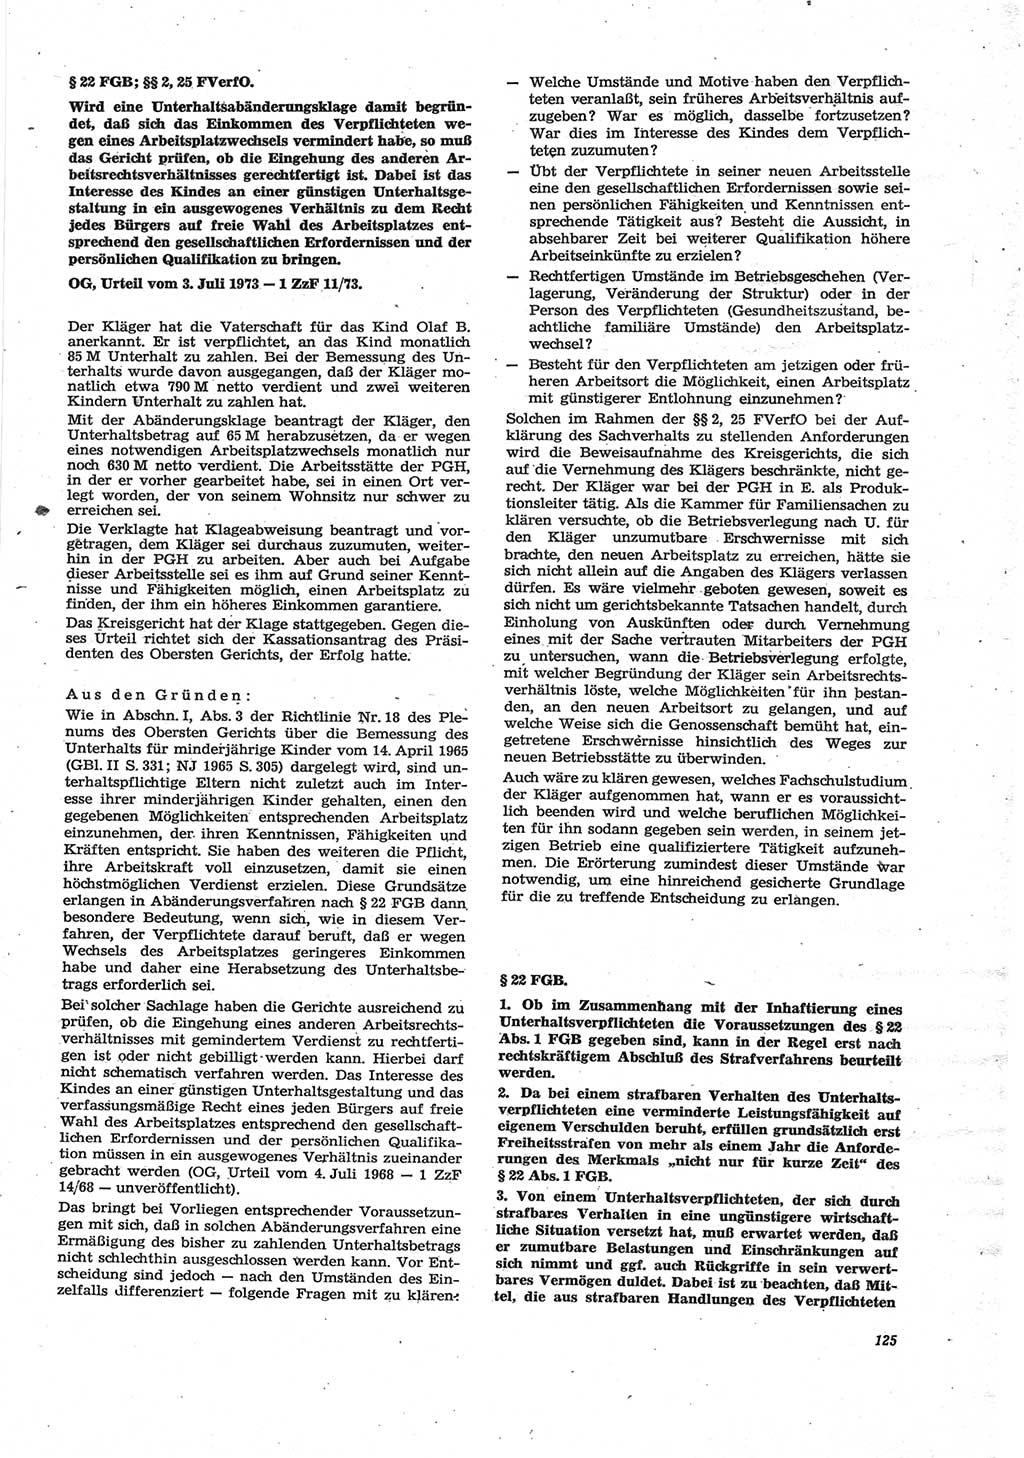 Neue Justiz (NJ), Zeitschrift für Recht und Rechtswissenschaft [Deutsche Demokratische Republik (DDR)], 28. Jahrgang 1974, Seite 125 (NJ DDR 1974, S. 125)